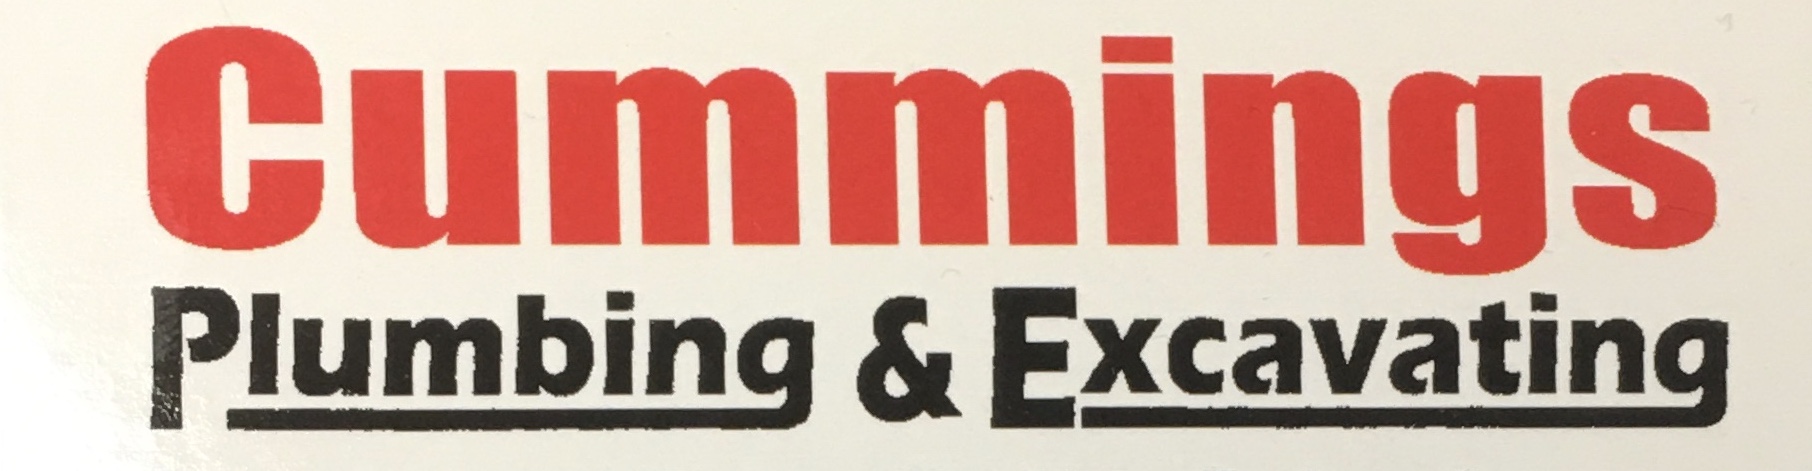 Cummings Plumbing & Excavating Logo